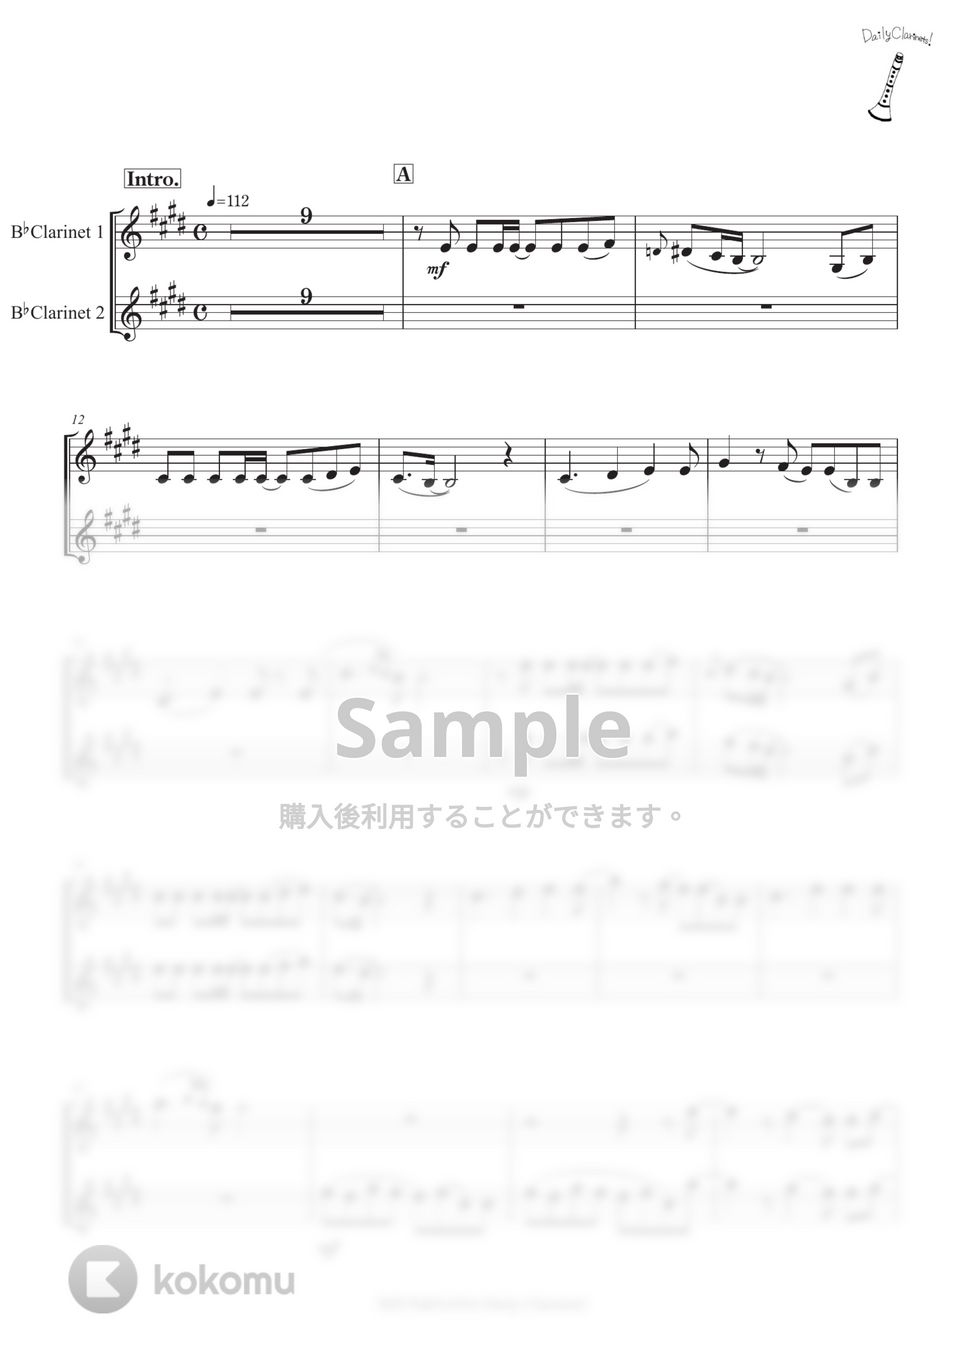 あいみょん - マリーゴールド by SHUN&NANA Daily Clarinets!